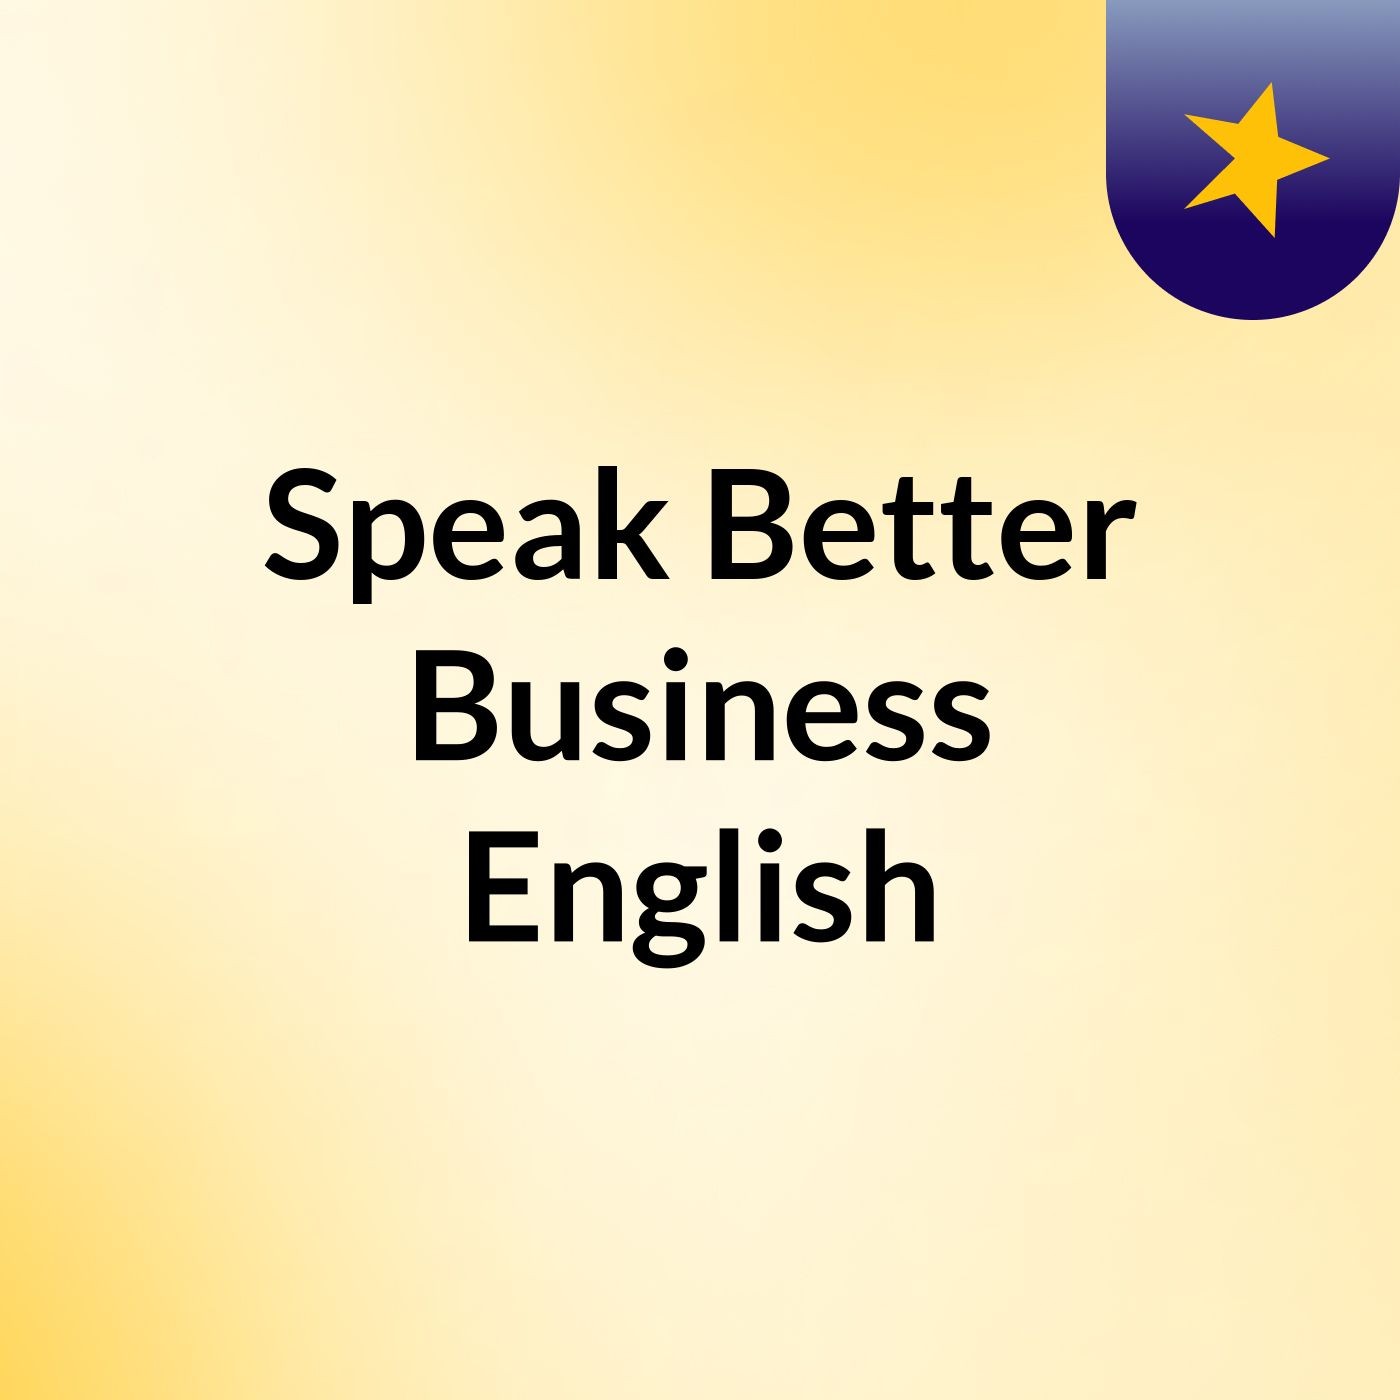 Speak Better Business English